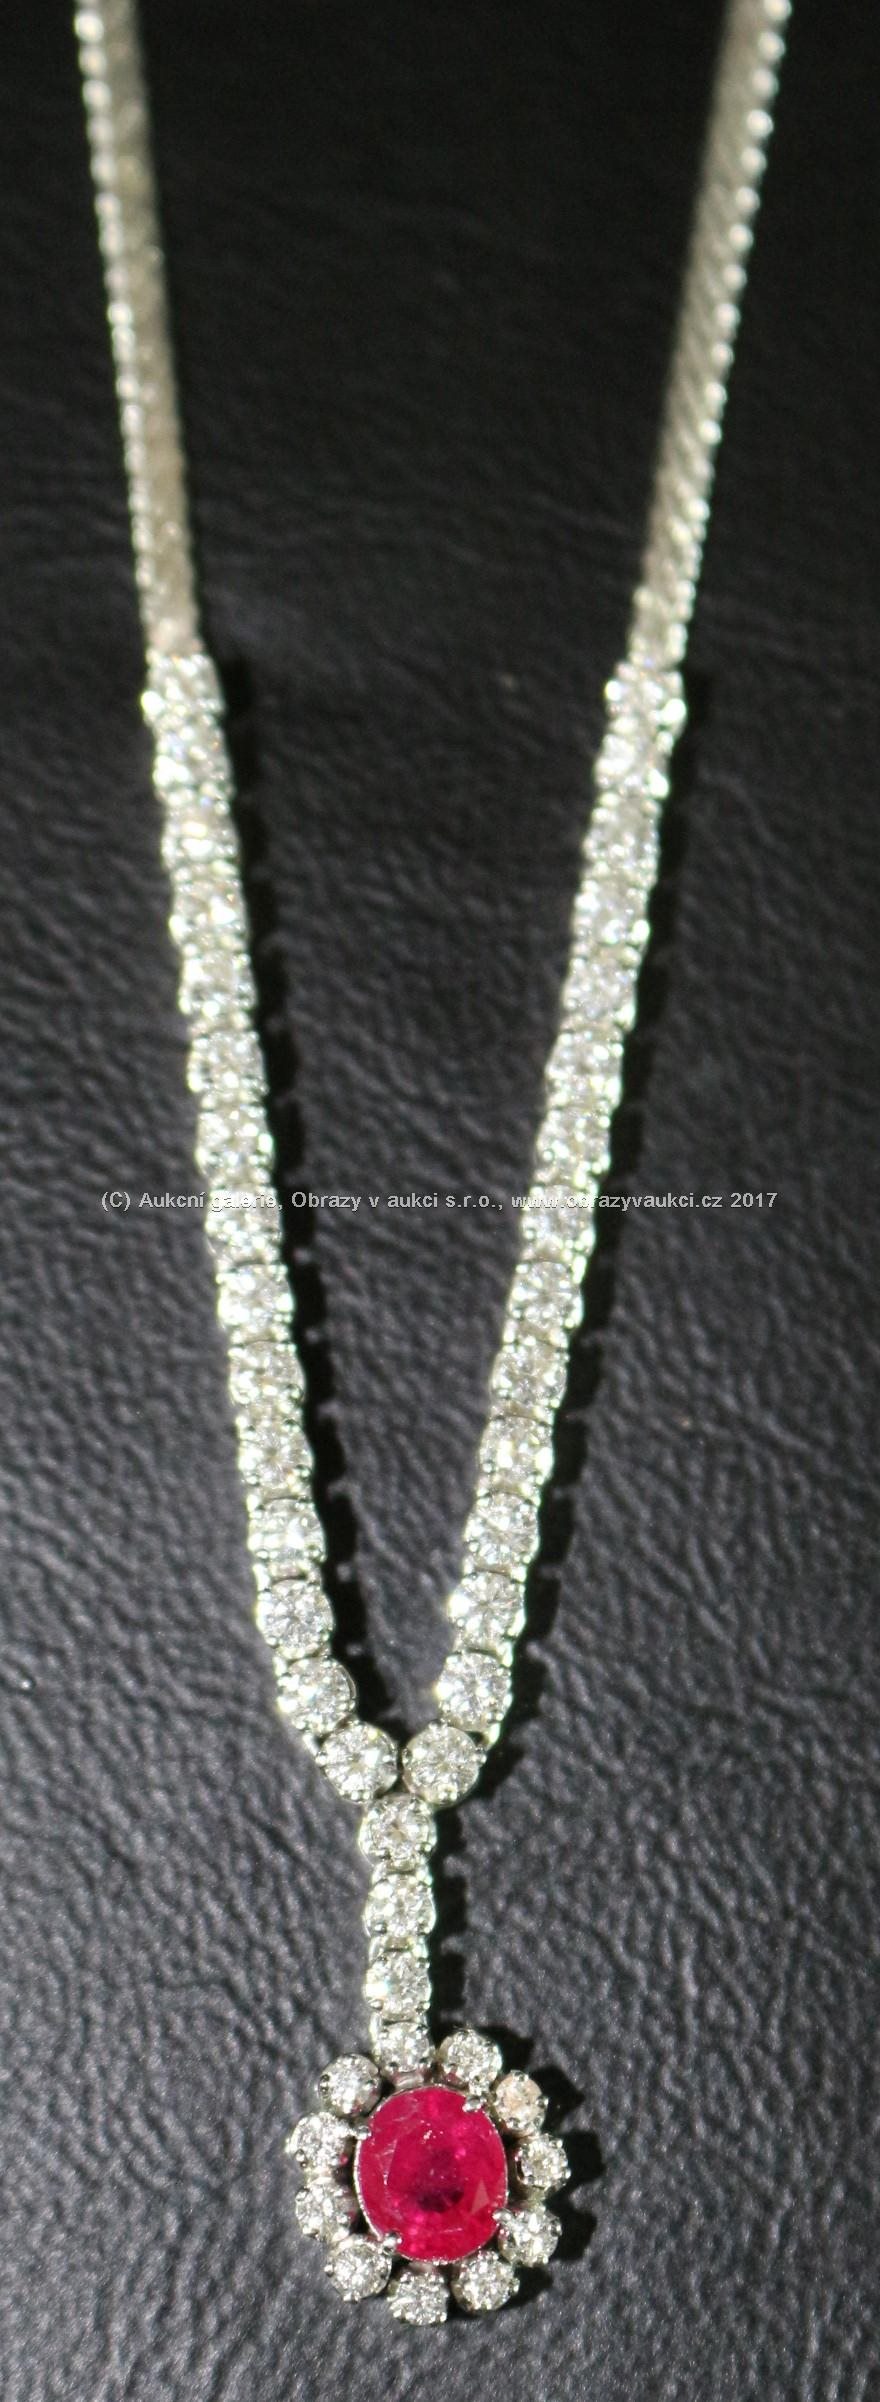 Zlatý náhrdelník - Bílé zlato 750/1000, punc kohout 3, hrubá hmotnost 18,75 g